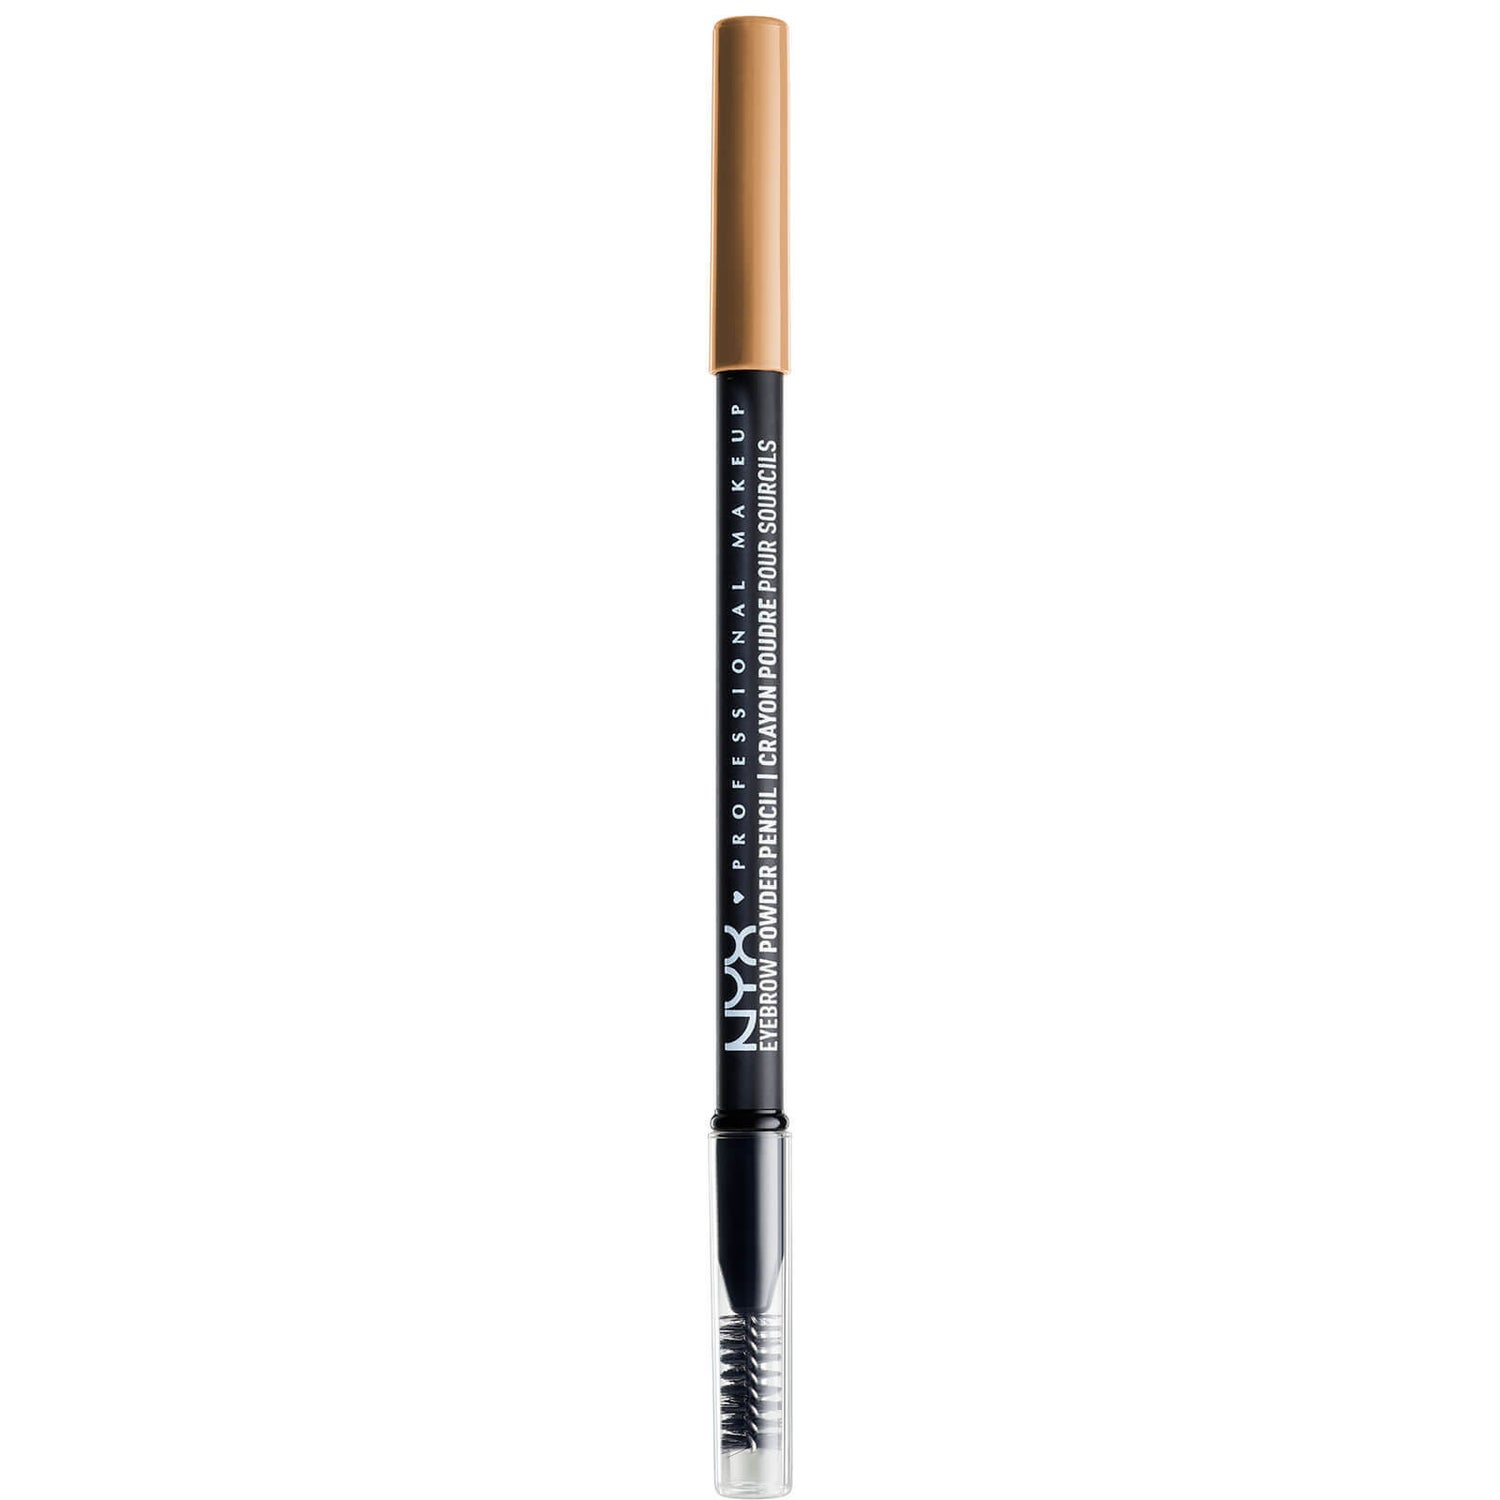 NYX Professional Makeup Eyebrow Powder Pencil (Various Shades)